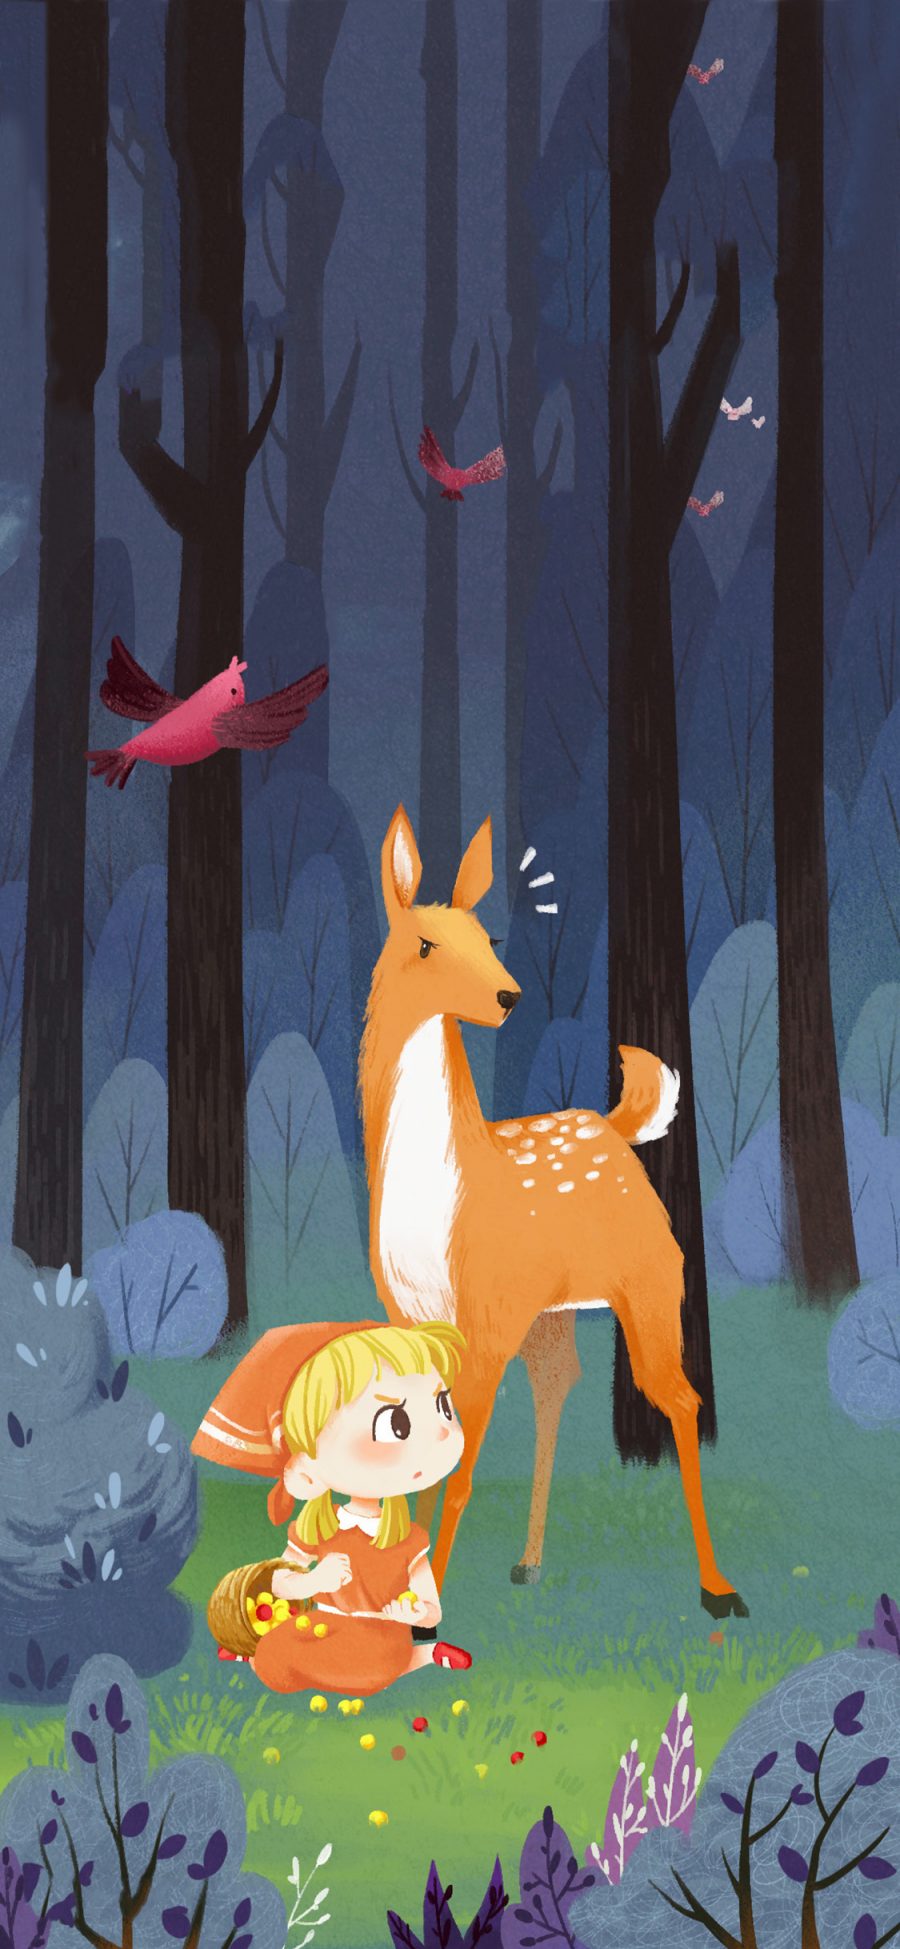 [2436×1125]森林 插图 小鹿 女孩 苹果手机动漫壁纸图片